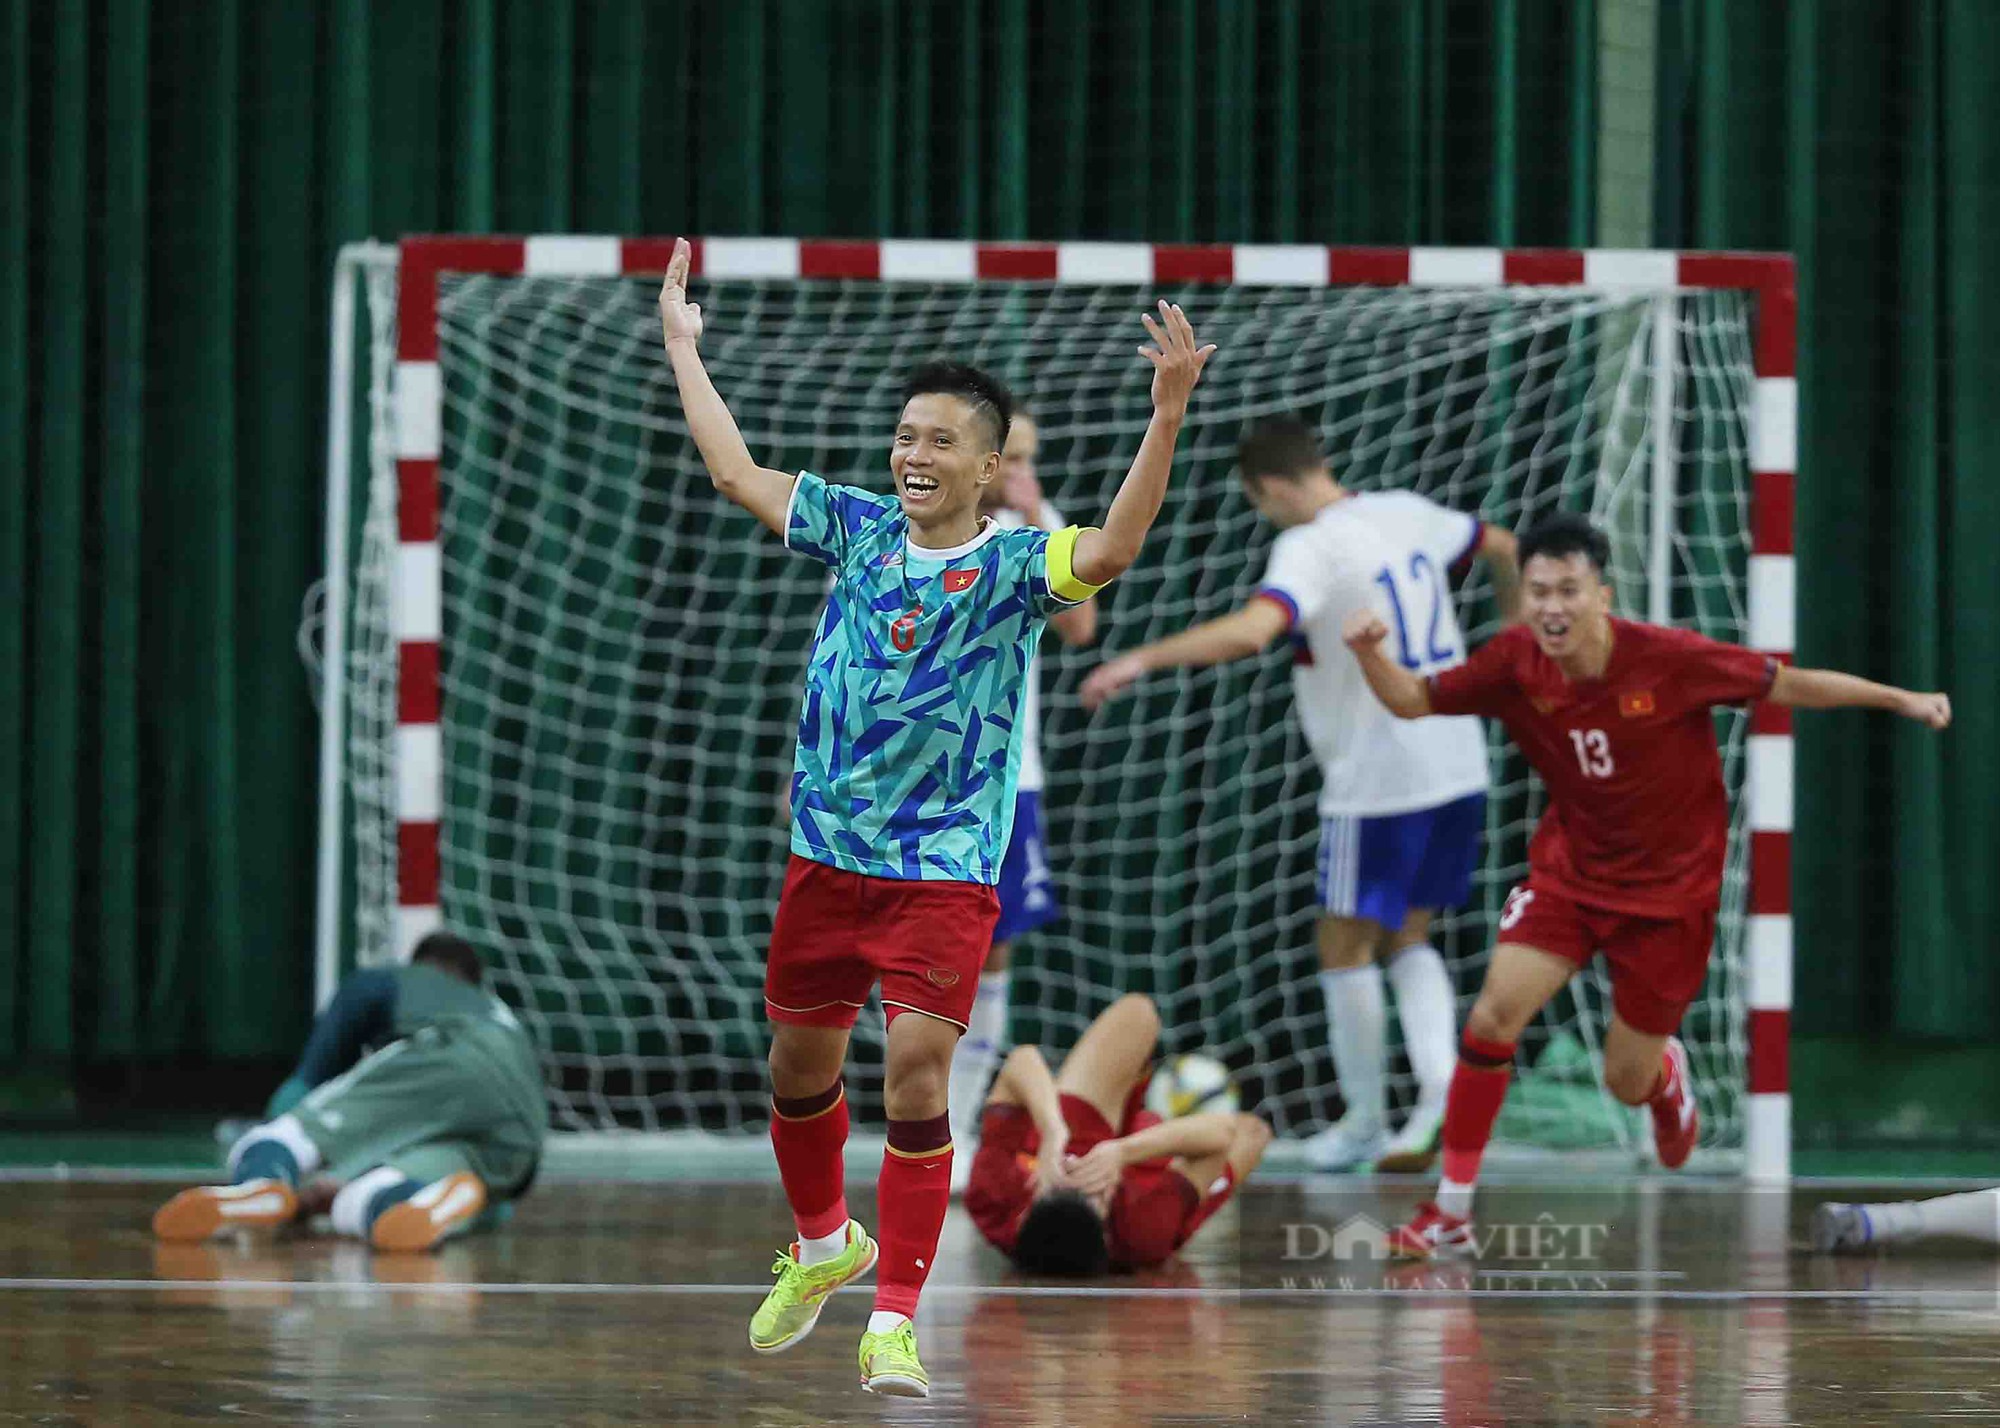 Tân đội trưởng ghi bàn phút cuối, futsal Việt Nam kịch tính cầm hoà đội hạng 4 thế giới - Ảnh 10.